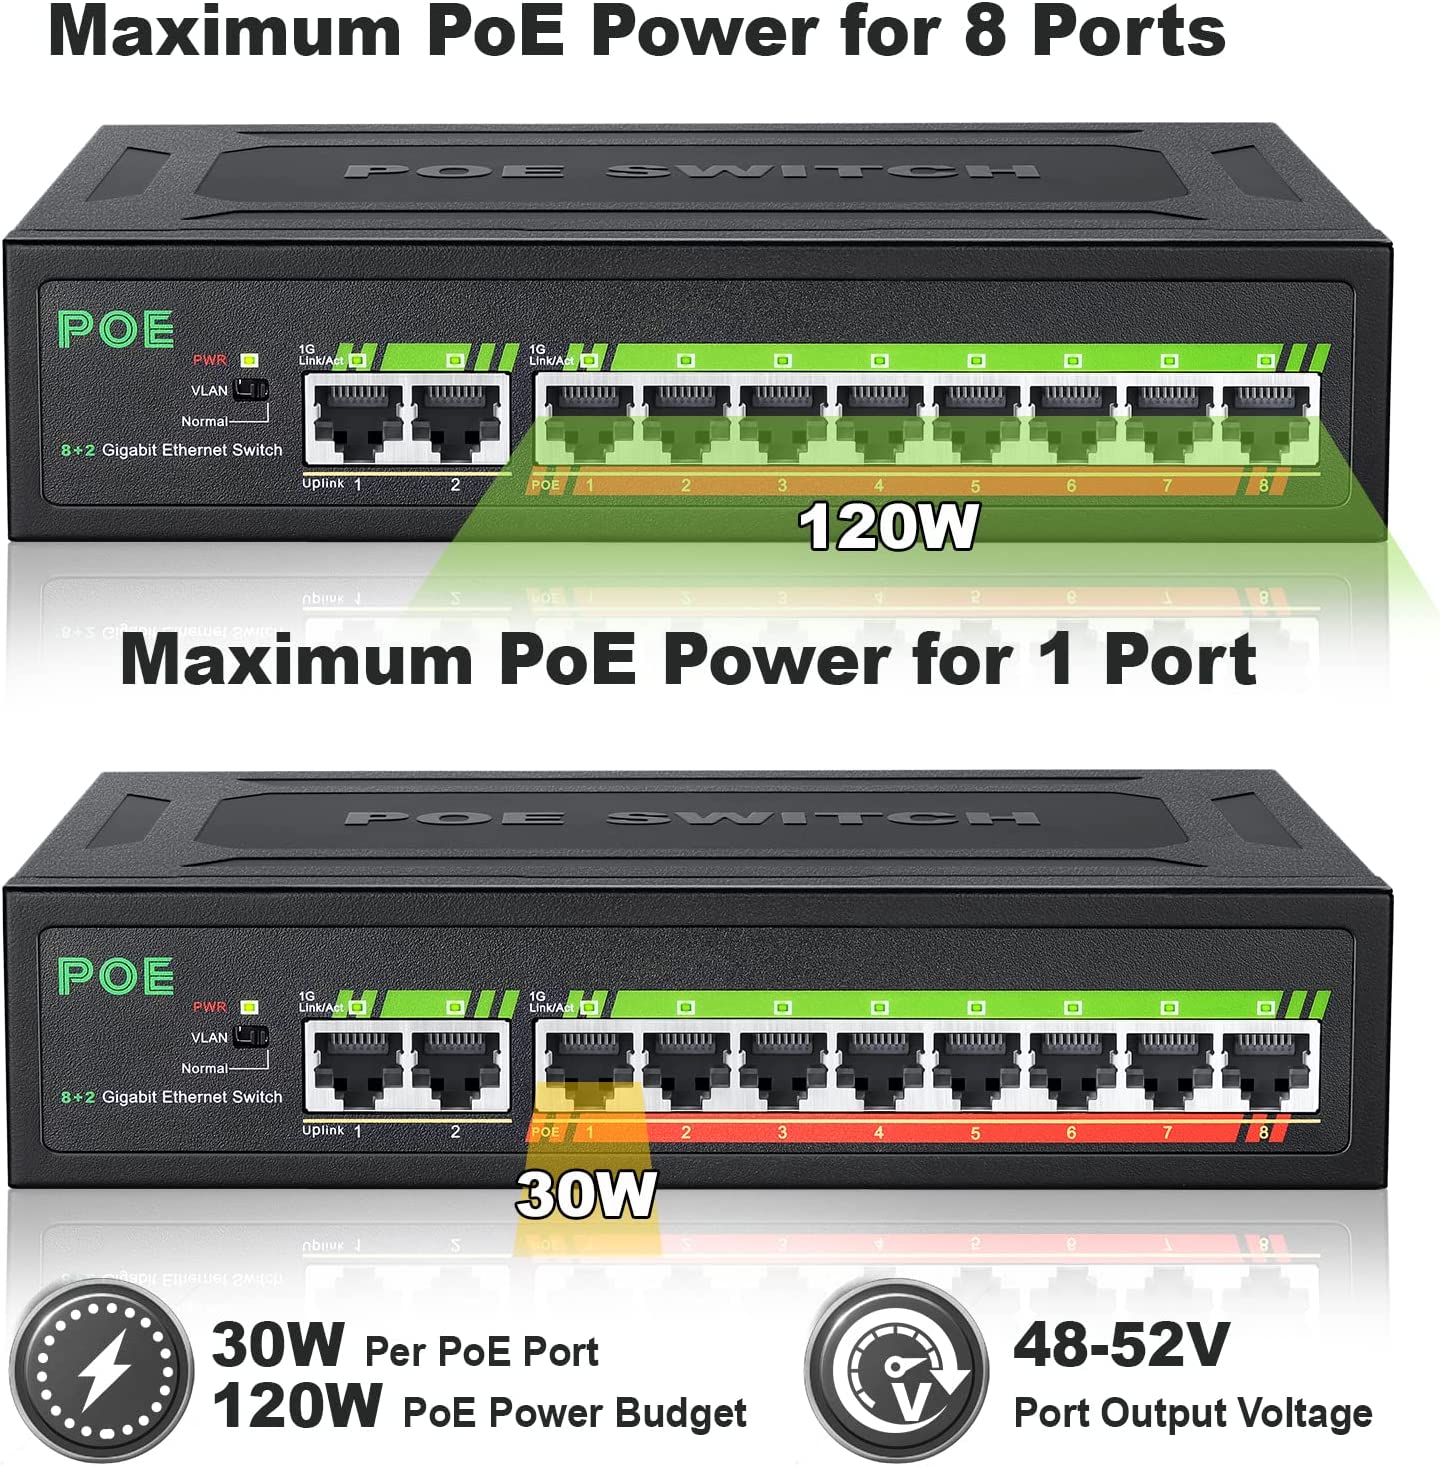 HF-ES48OE: 8 Port Gigabit PoE Switch with 2 Gigabit Uplink, 8 10/100/1000Mbps PoE+ Ports @120W, 802.3af/802.3at Compliant